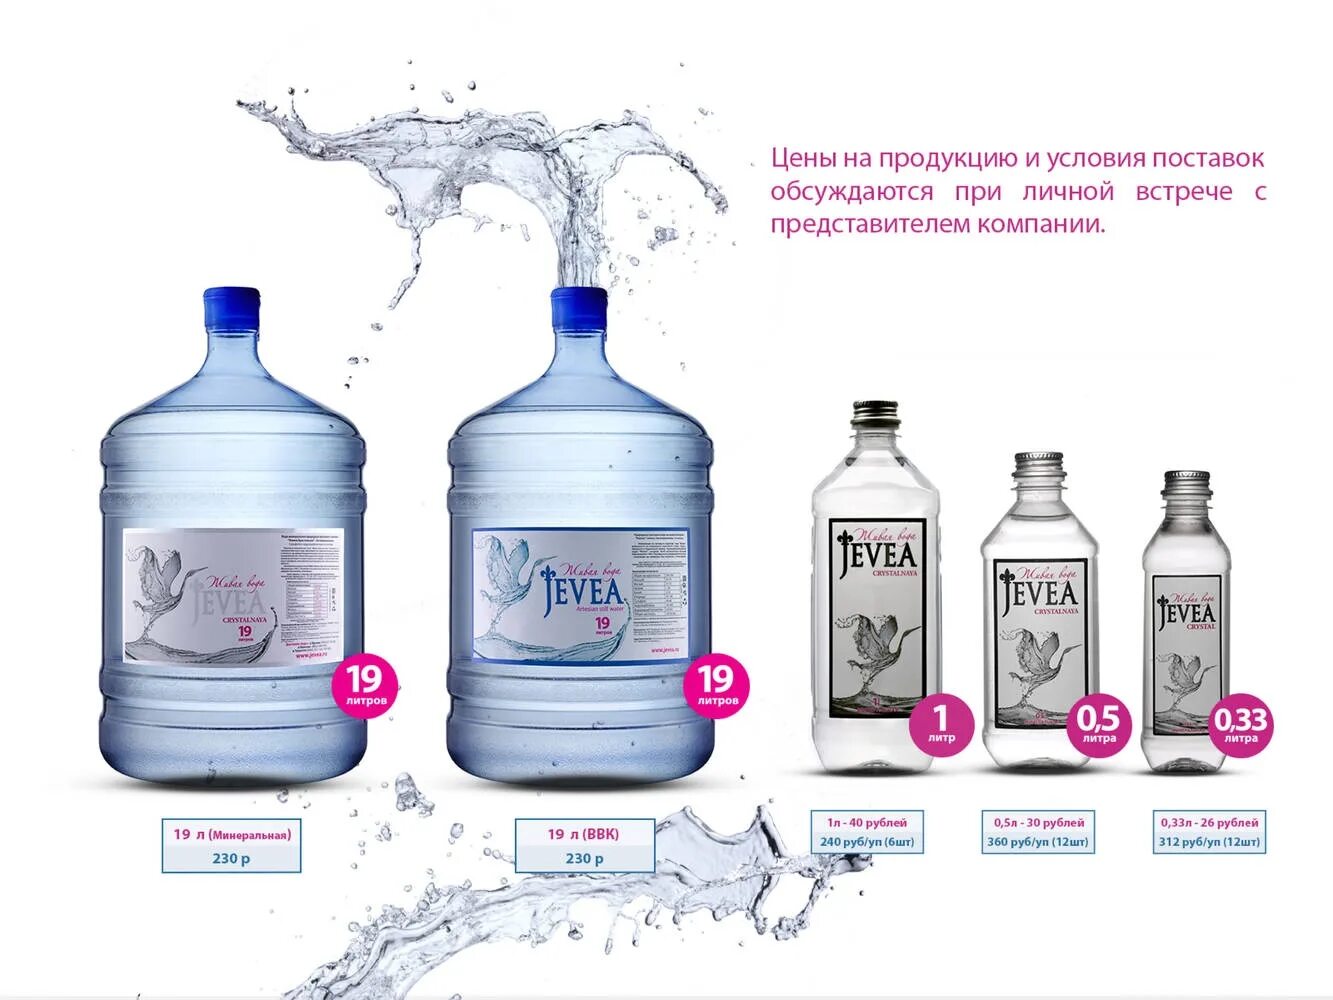 Заказ воды тольятти. Питьевая вода фирмы. Минерализация бутилированной воды. Жевея вода питьевая вода. Логотип питьевой воды.